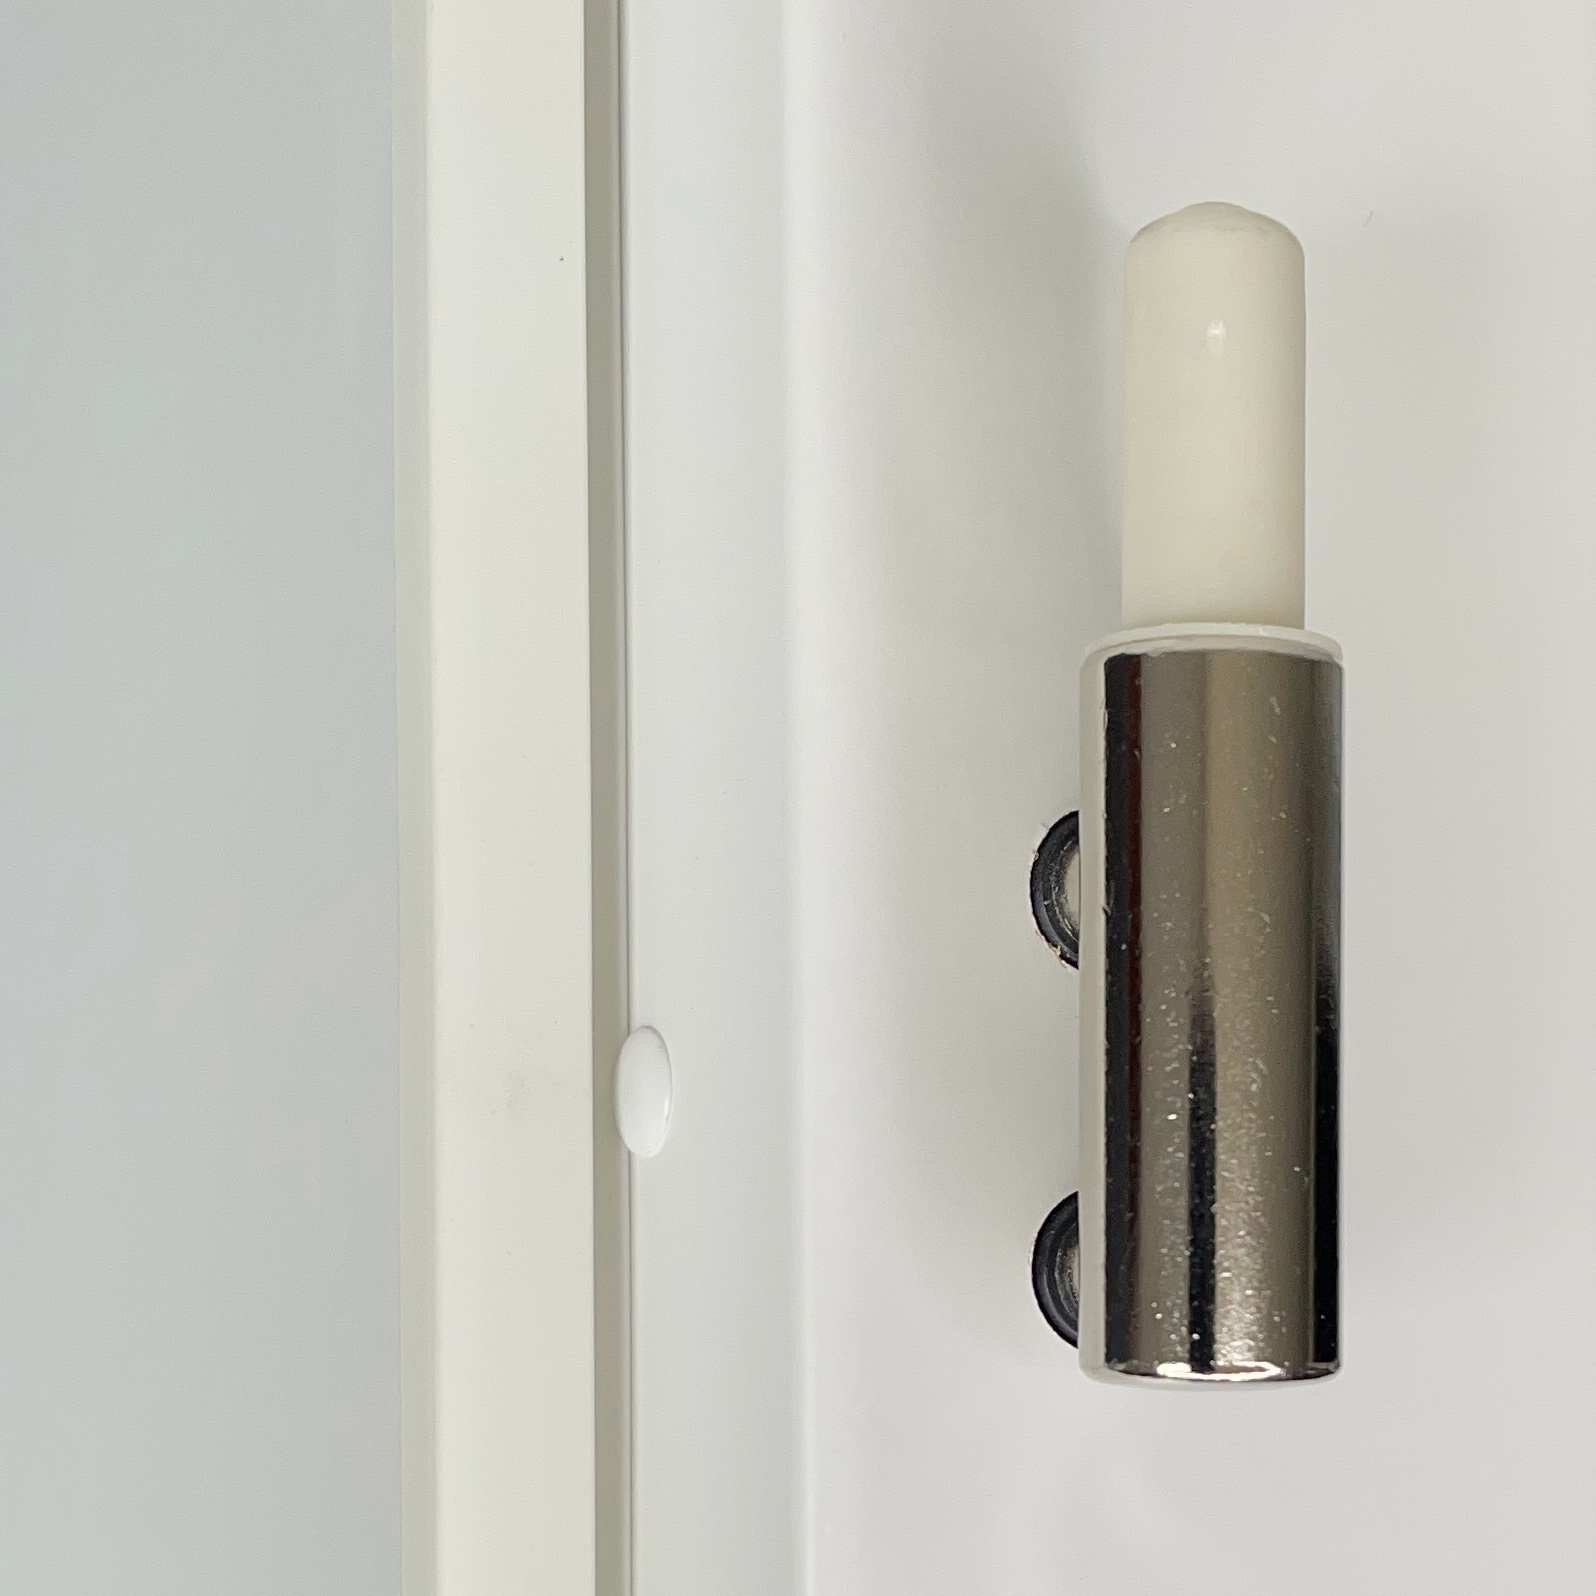 Zimmertür mit Zarge soft-weiß 2 Rillen Eckkante - Modell Designtür Q21